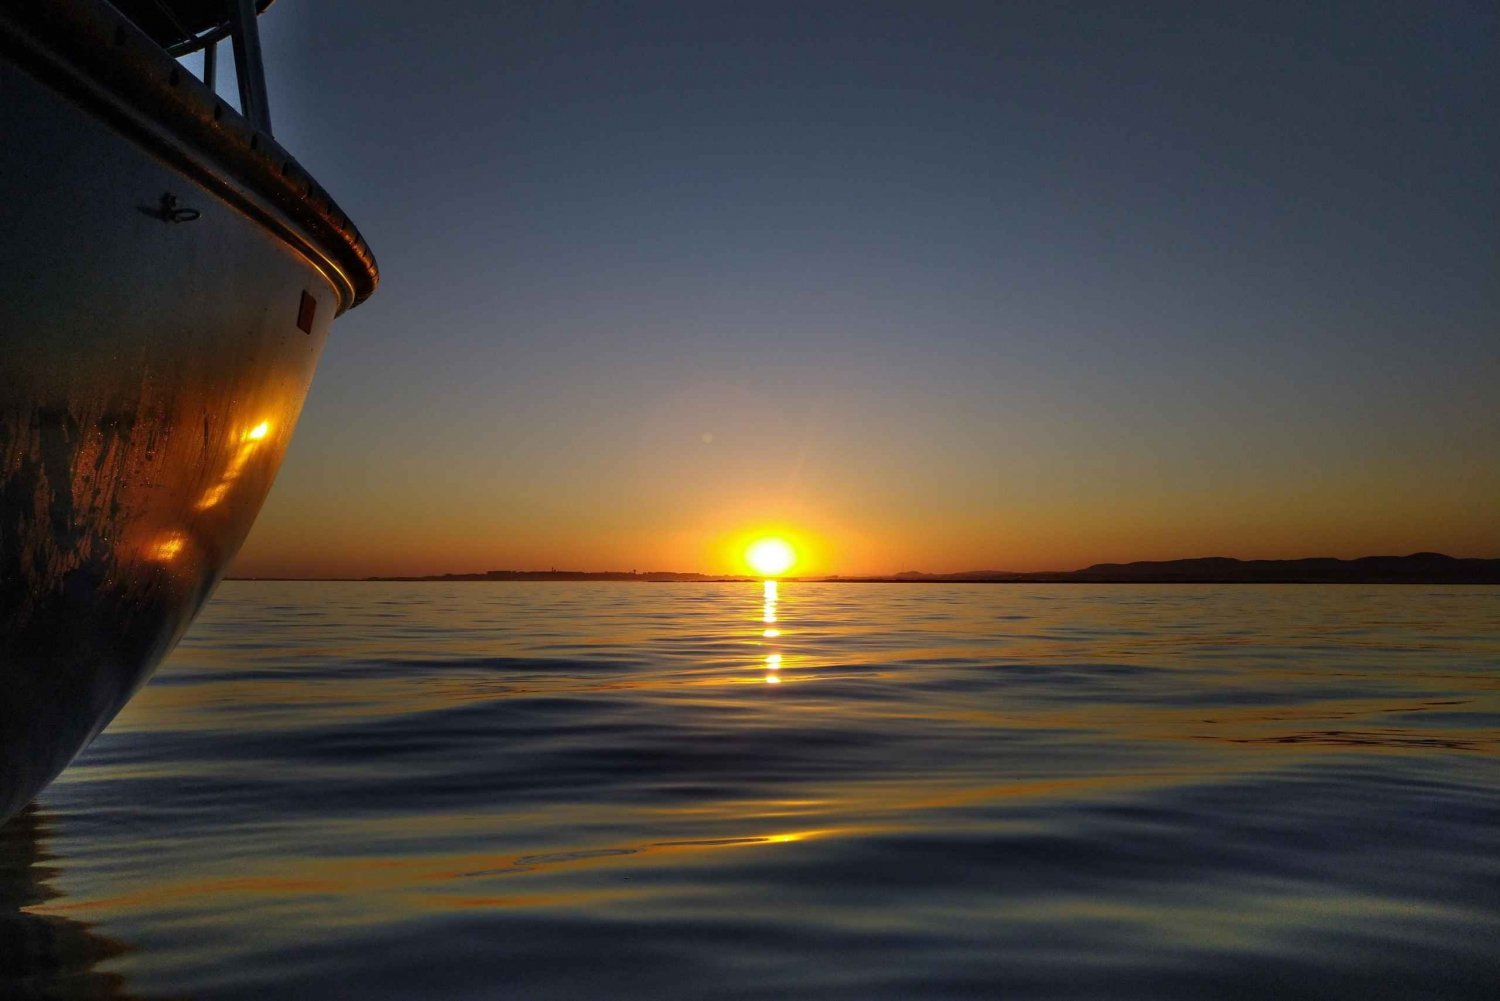 Pôr do sol em um barco clássico na Ria Formosa Olhão, bebidas e música.